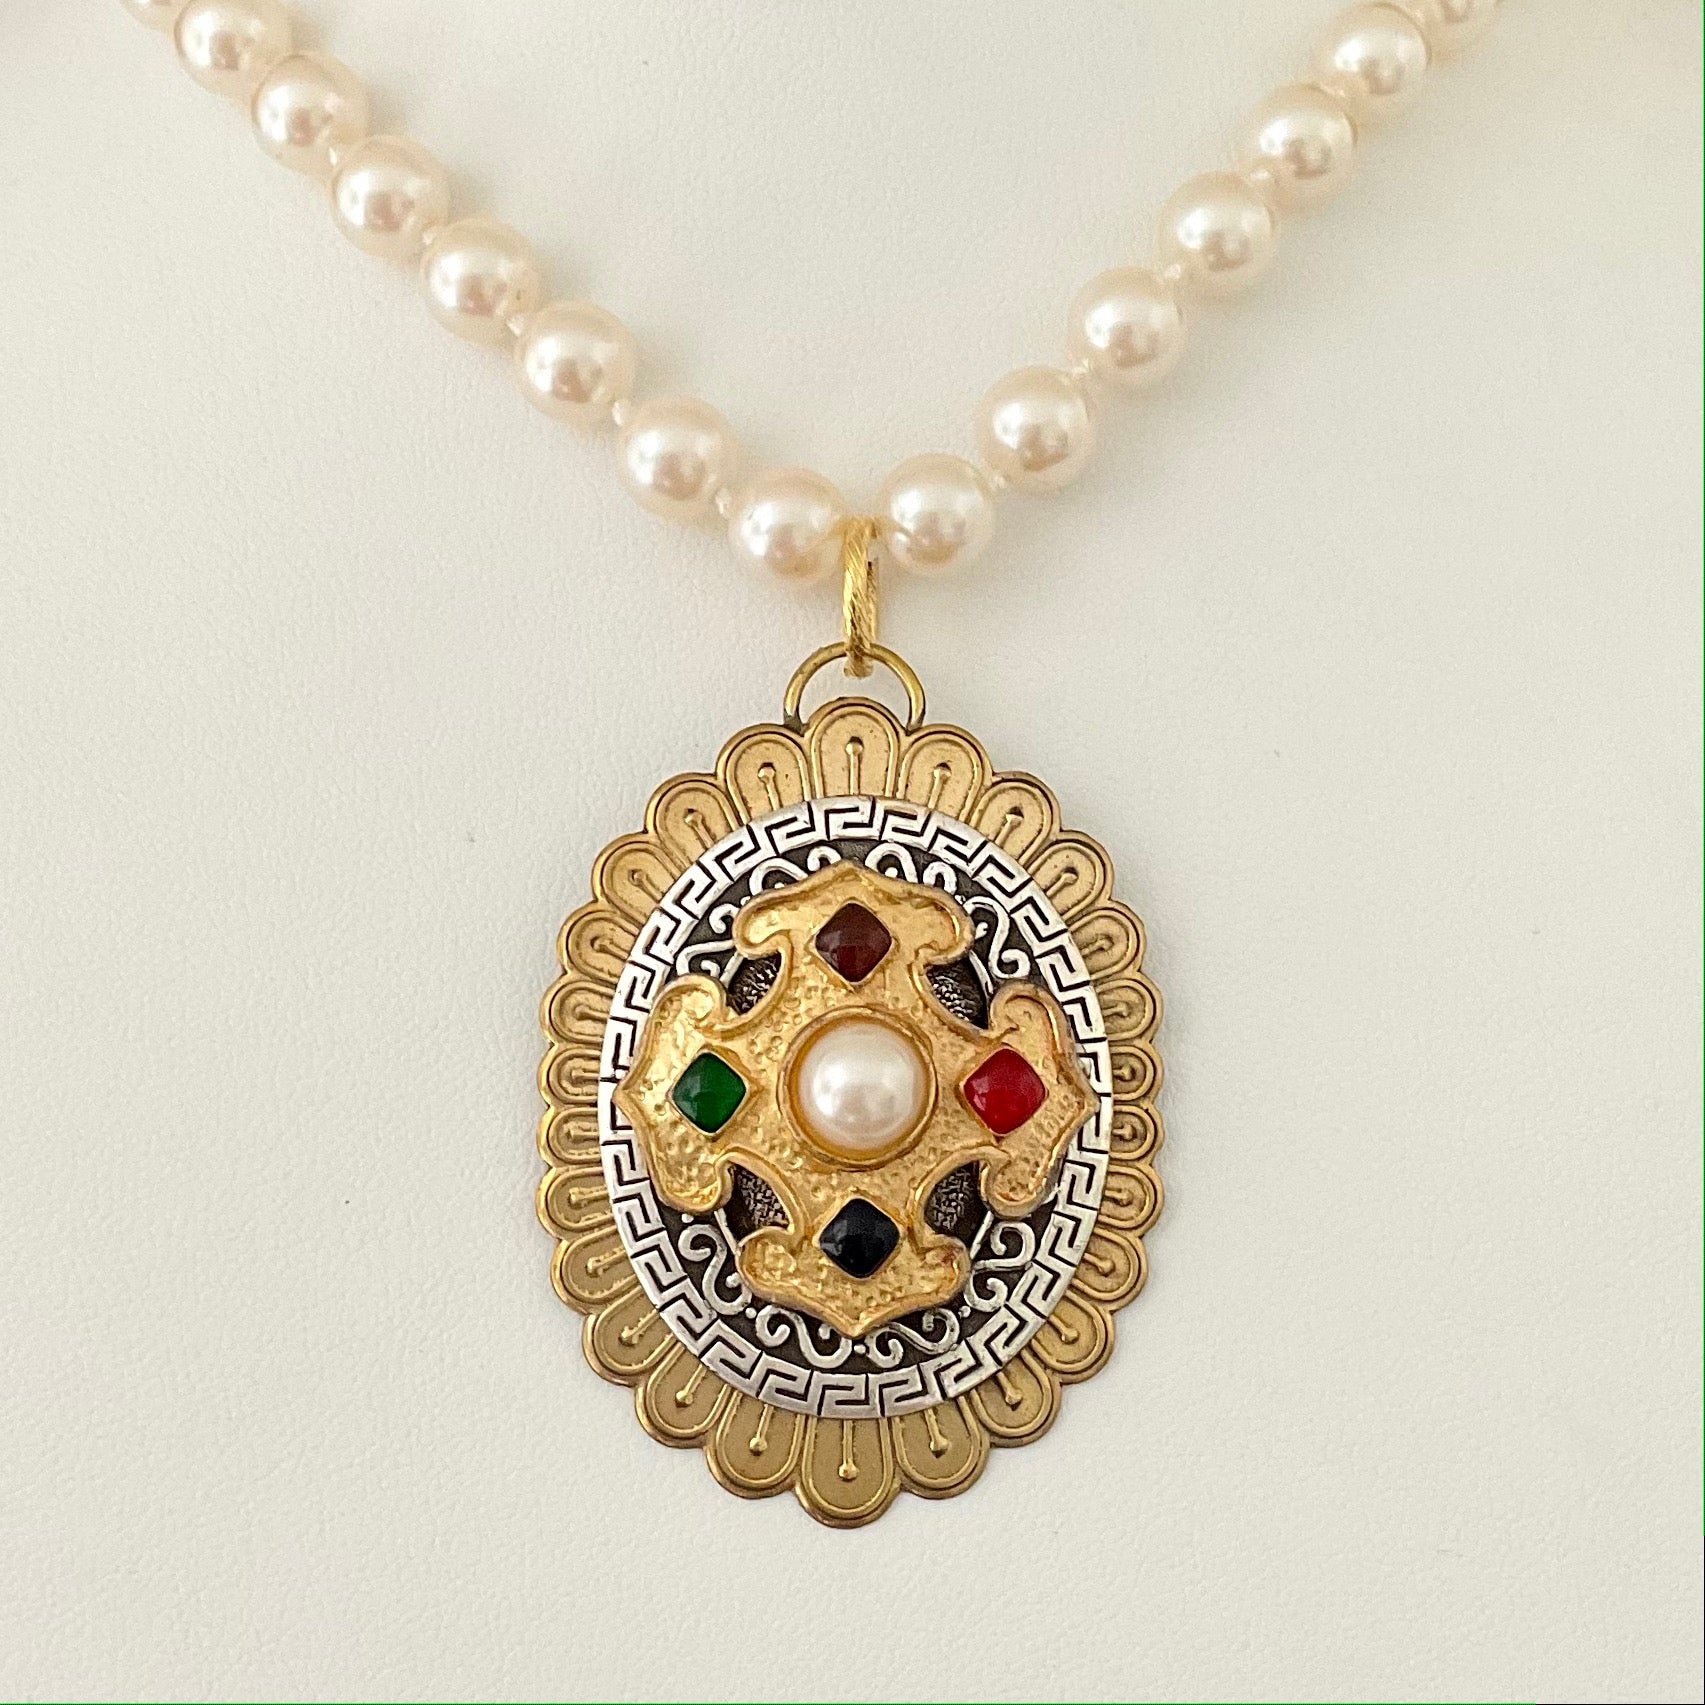 Vintage Pearls with Repurposed Vintage Earring Pendant 24"